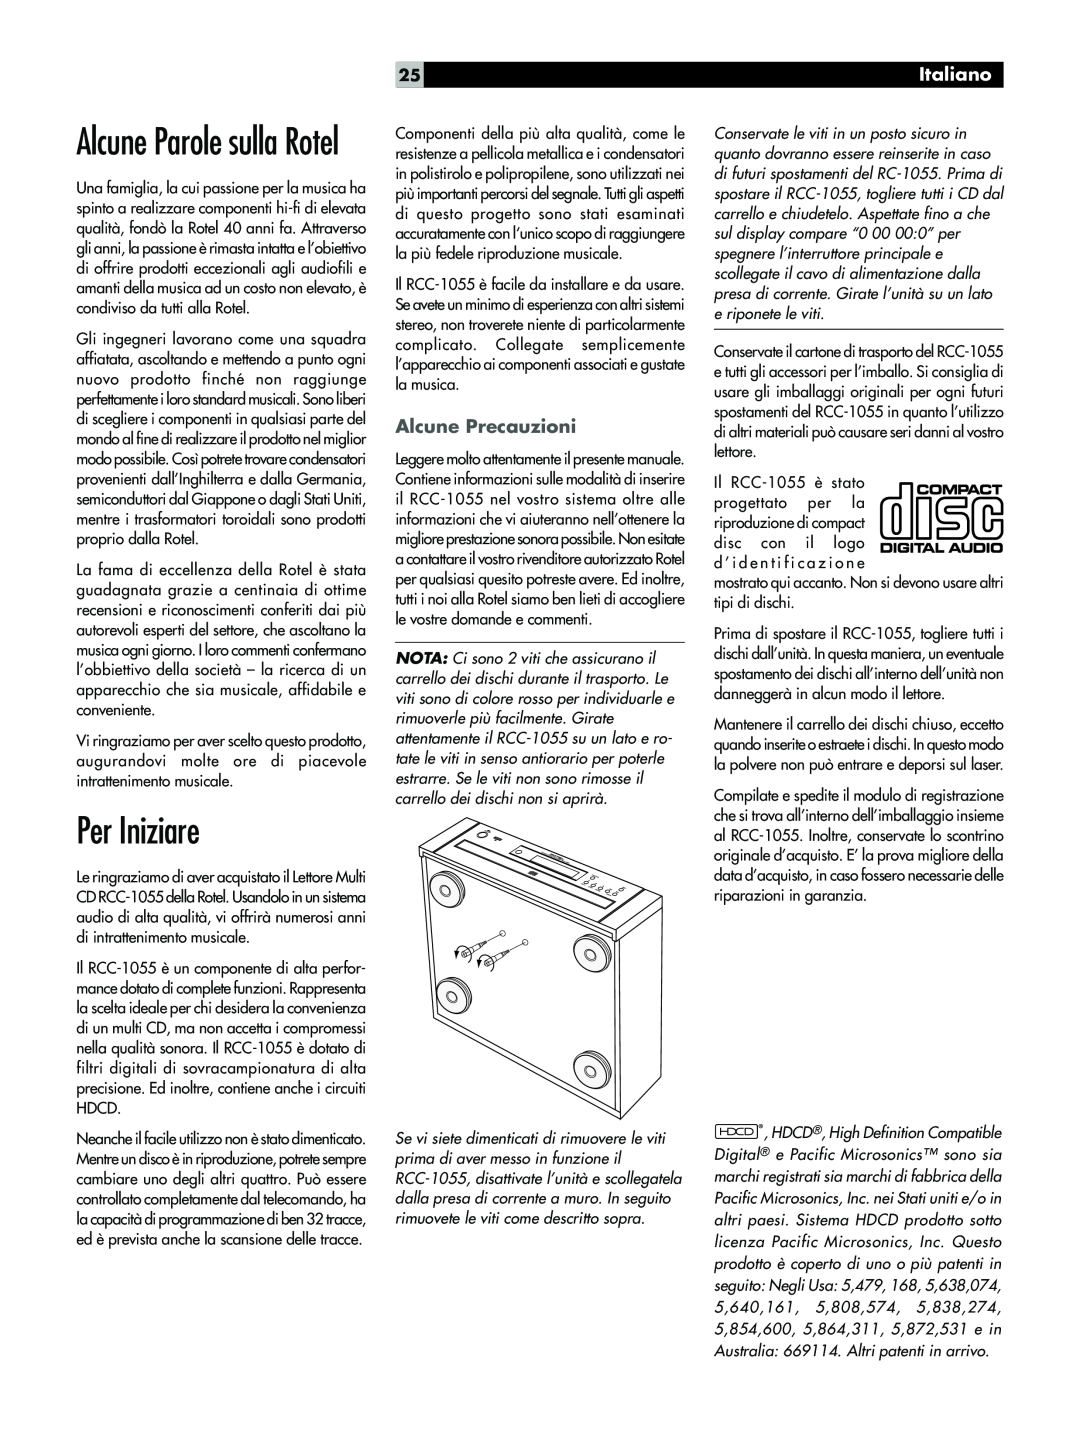 Rotel RCC-1055 owner manual Per Iniziare, Alcune Parole sulla Rotel, Italiano, Alcune Precauzioni 